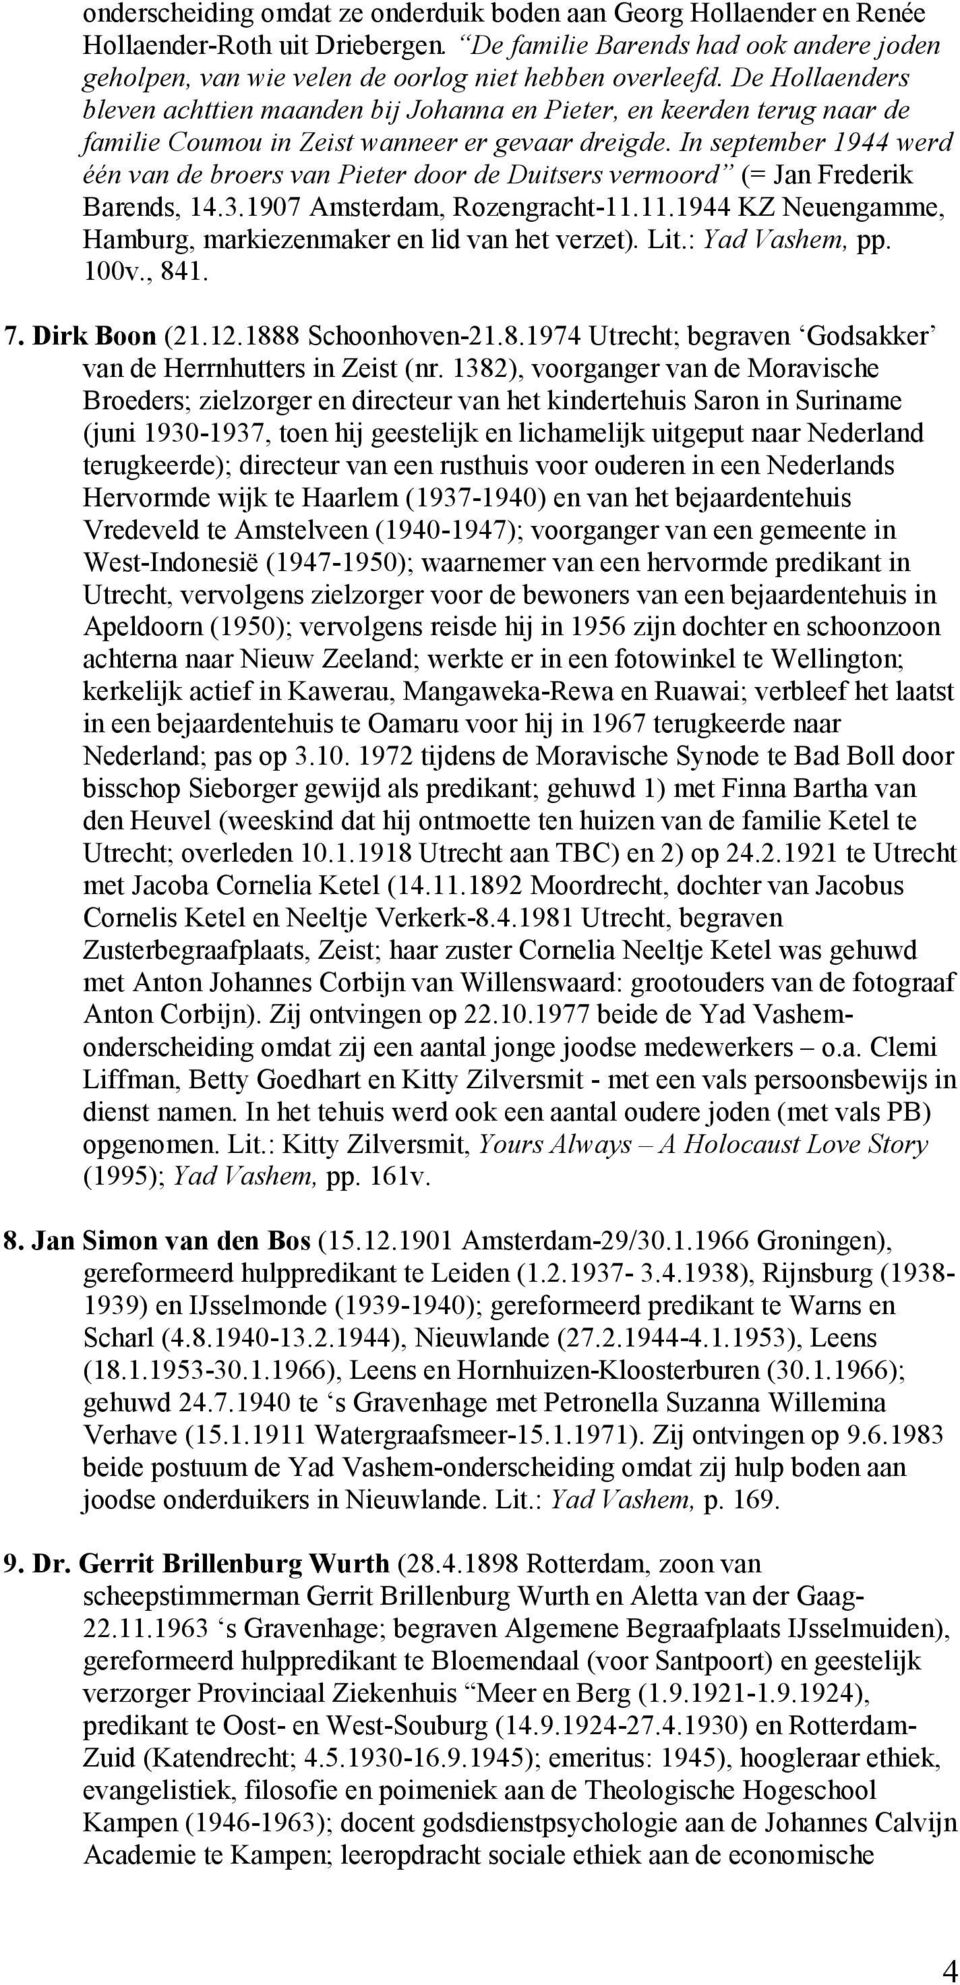 In september 1944 werd één van de broers van Pieter door de Duitsers vermoord (= Jan Frederik Barends, 14.3.1907 Amsterdam, Rozengracht-11.